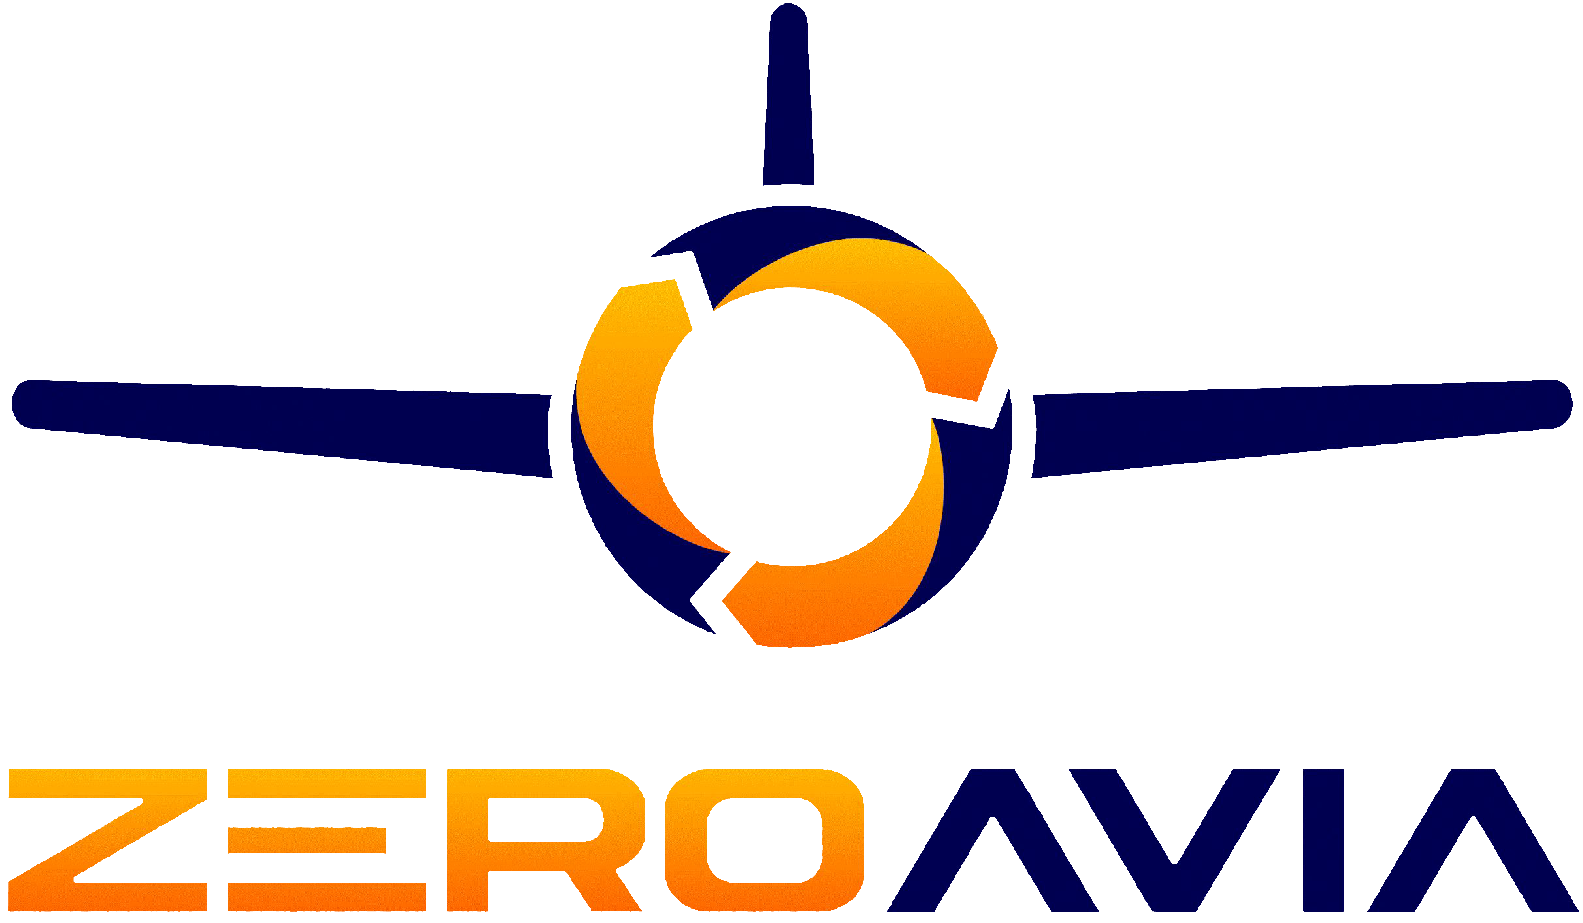 www.zeroavia.com